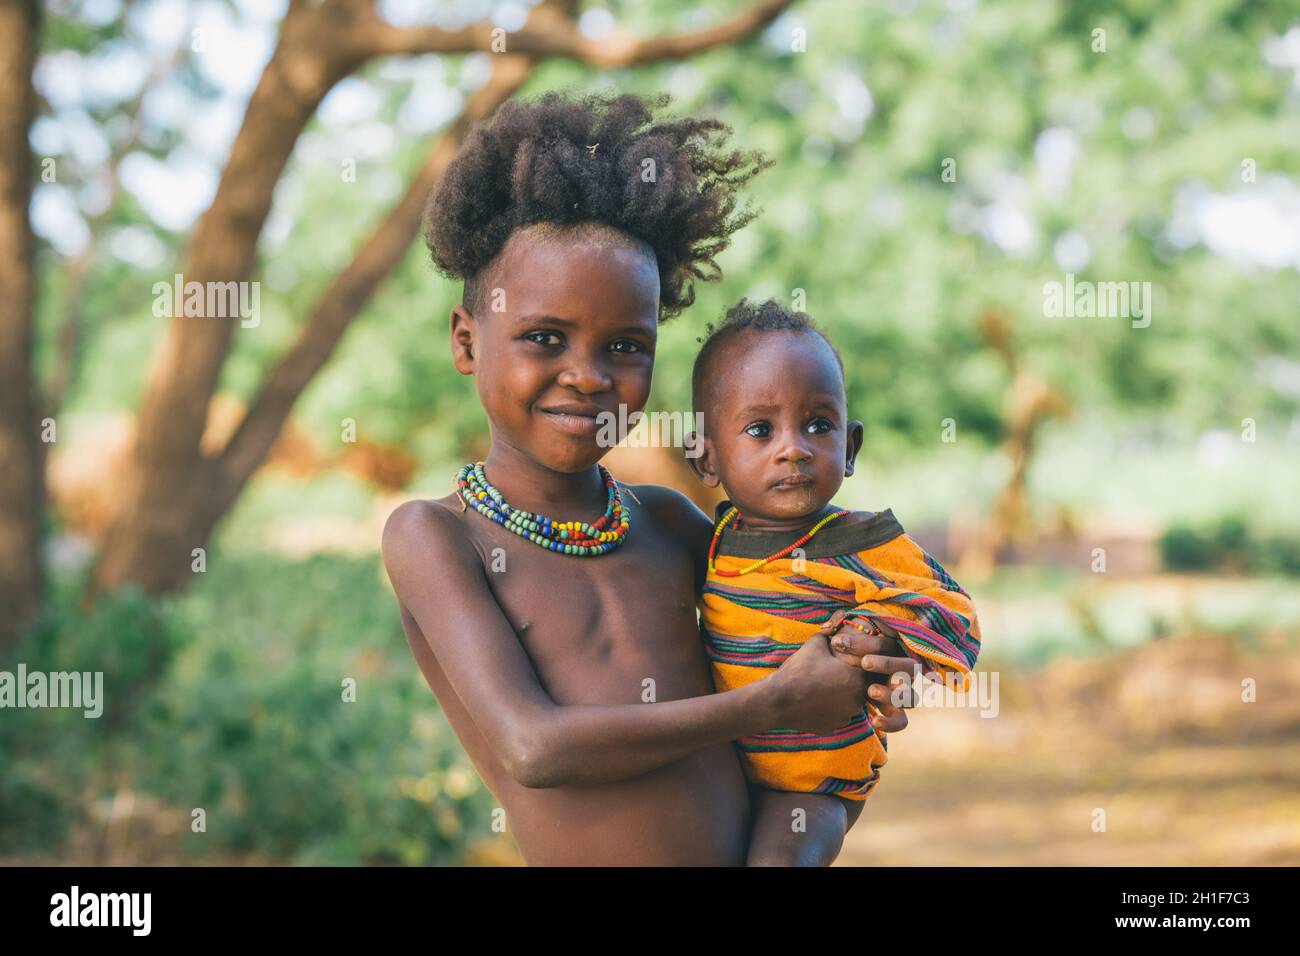 Omorate, Omo Valley, Ethiopie - 11 mai 2019 : Portrait d'enfants de la tribu africaine Dasanesh. Daasanach sont des groupes ethniques cushitiques qui habitent dans Banque D'Images